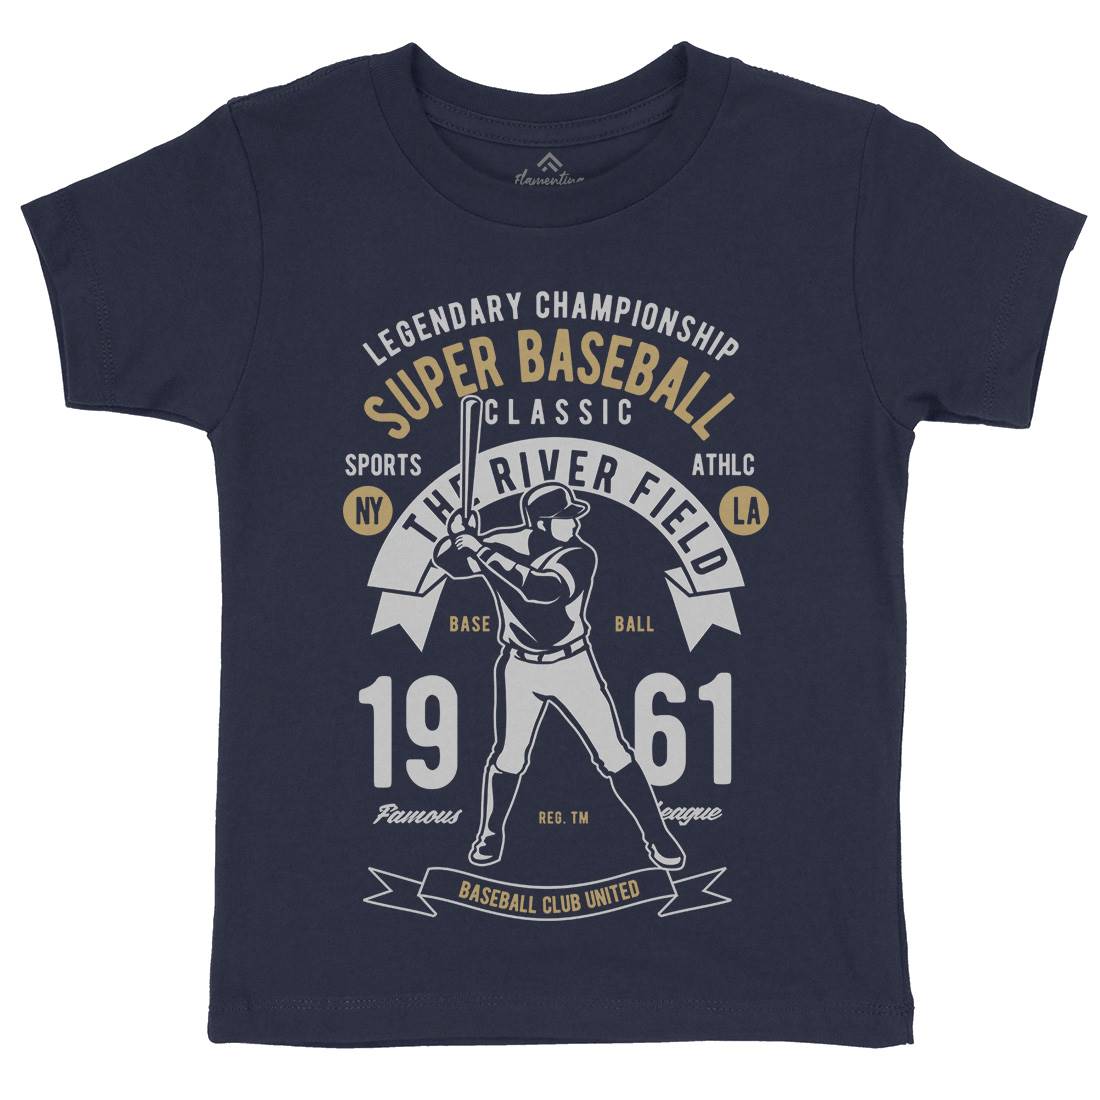 Super Baseball Kids Crew Neck T-Shirt Sport B455